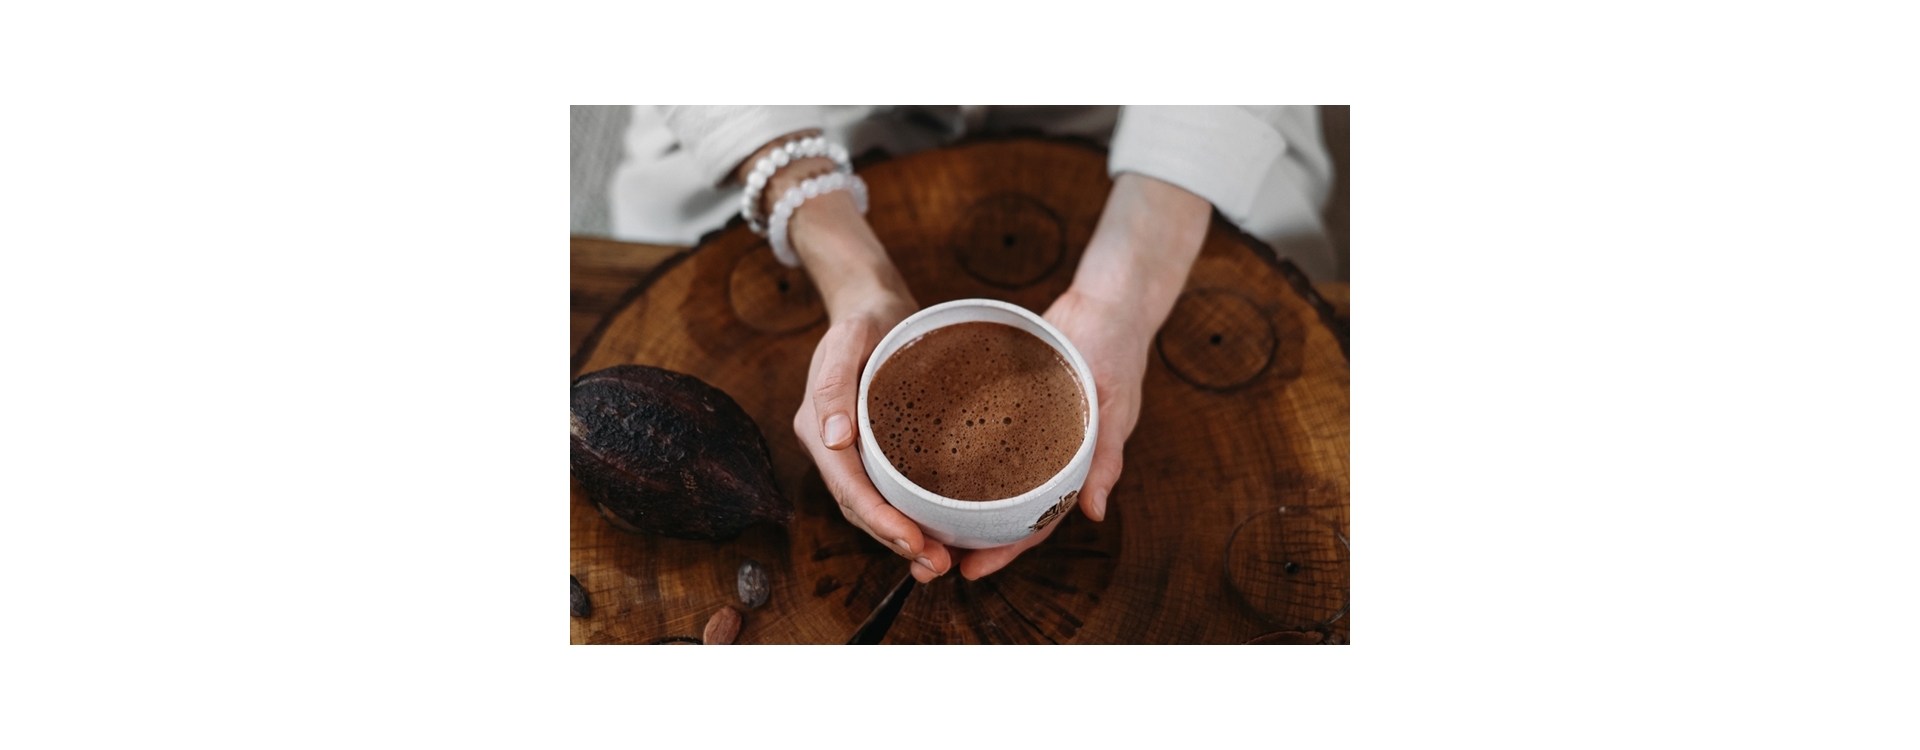 7 eenvoudige stappen voor het organiseren van een heilige cacaoceremonie + recept voor ceremoniële cacao